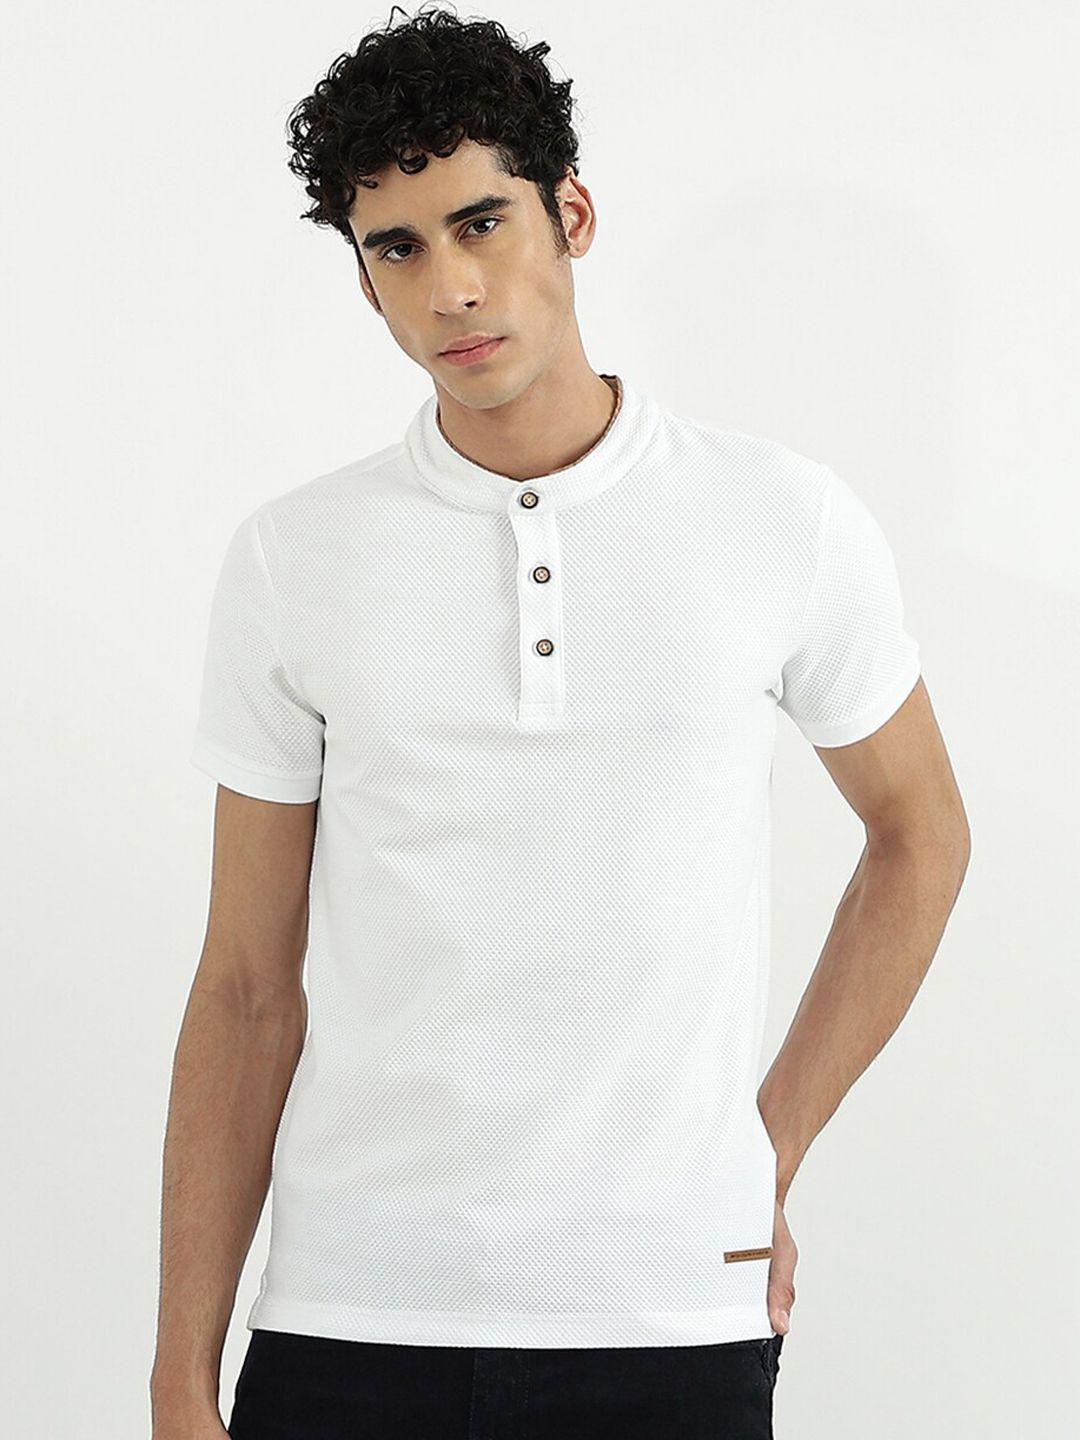 united colors of benetton men white mandarin collar polyester t-shirt